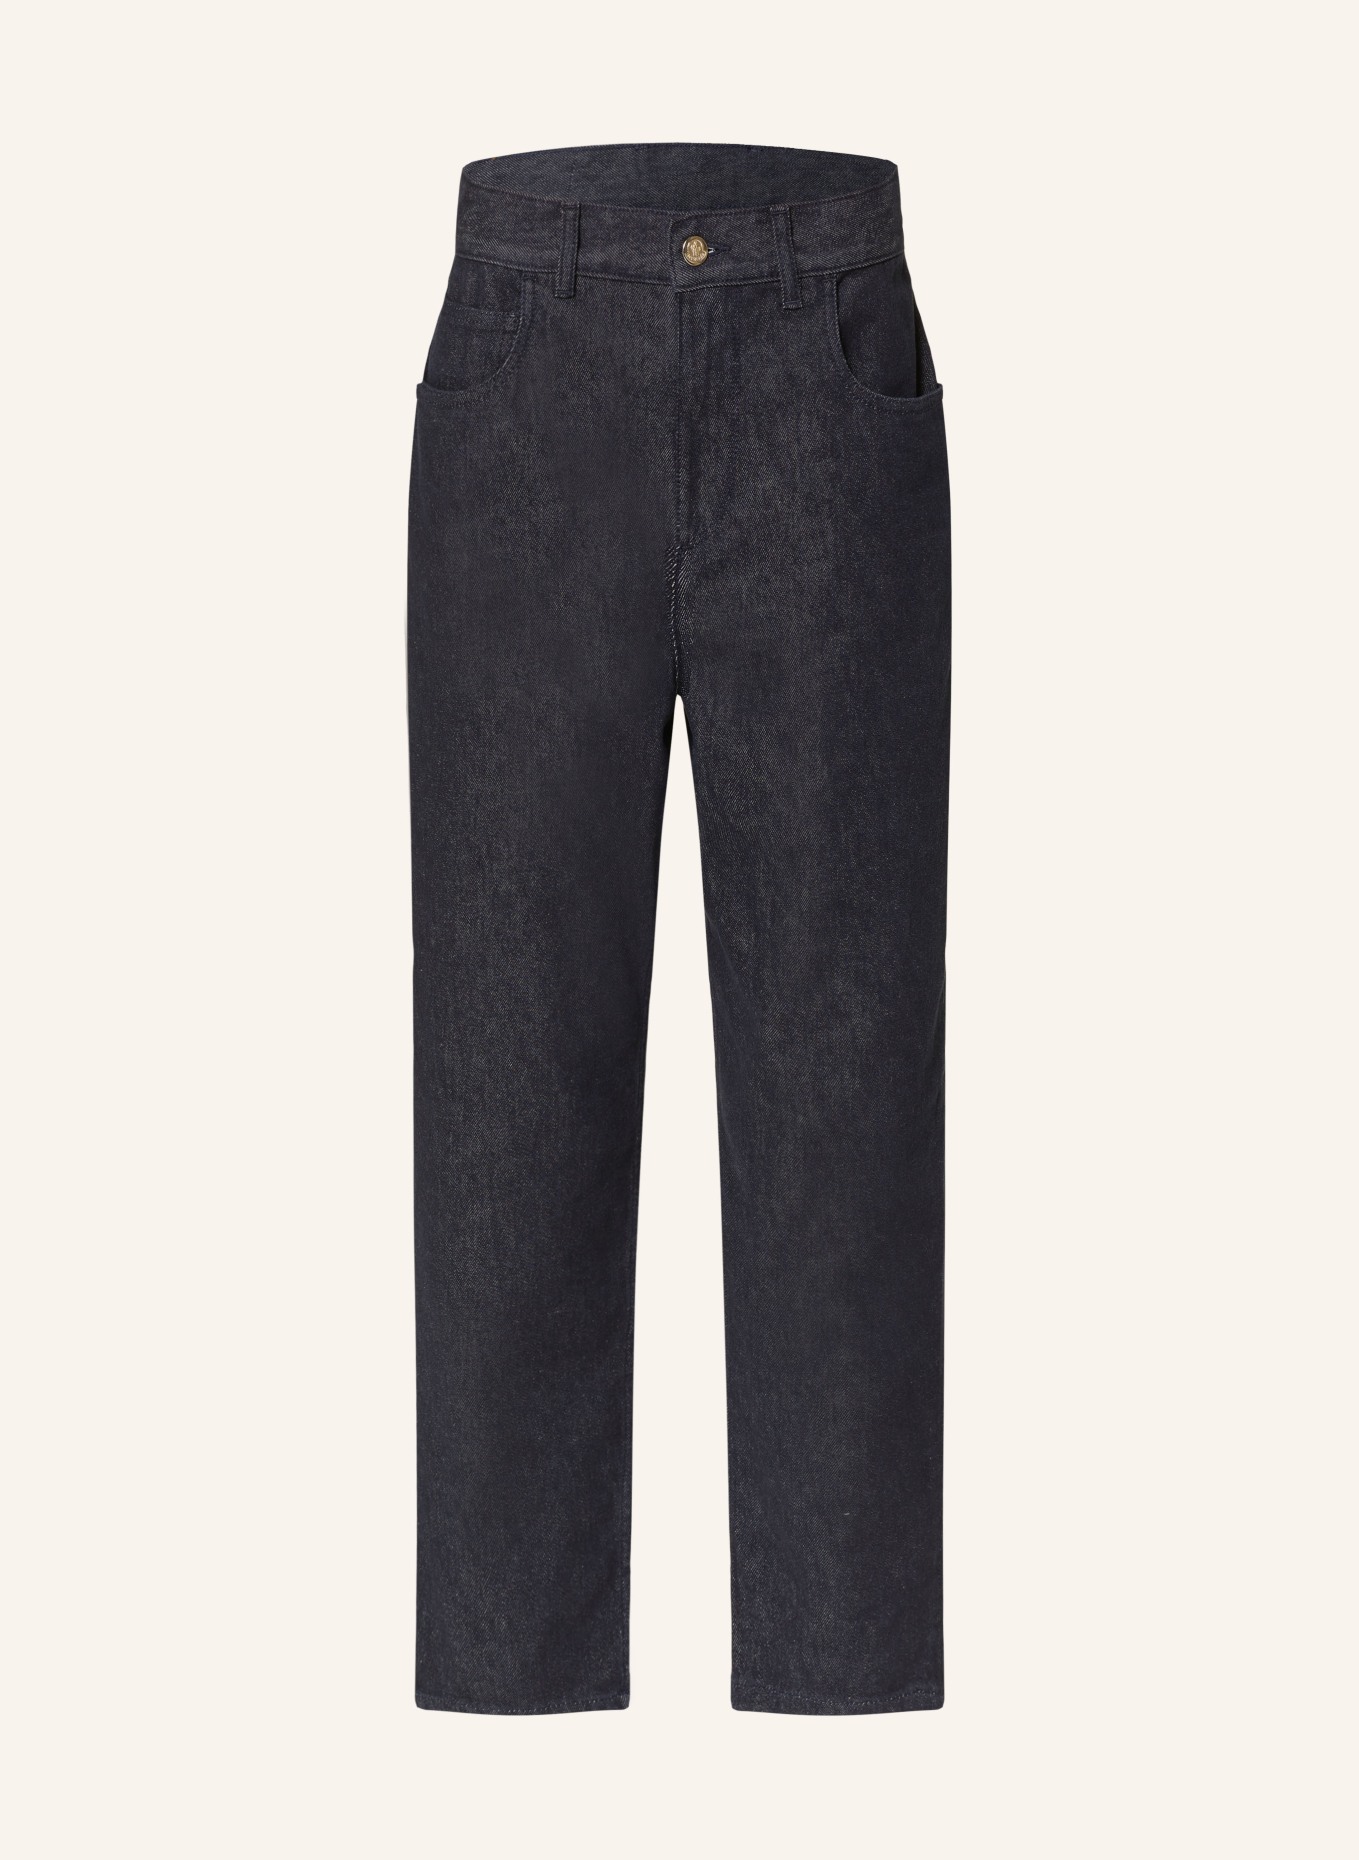 MONCLER 7/8 jeans, Color: 778 (Image 1)